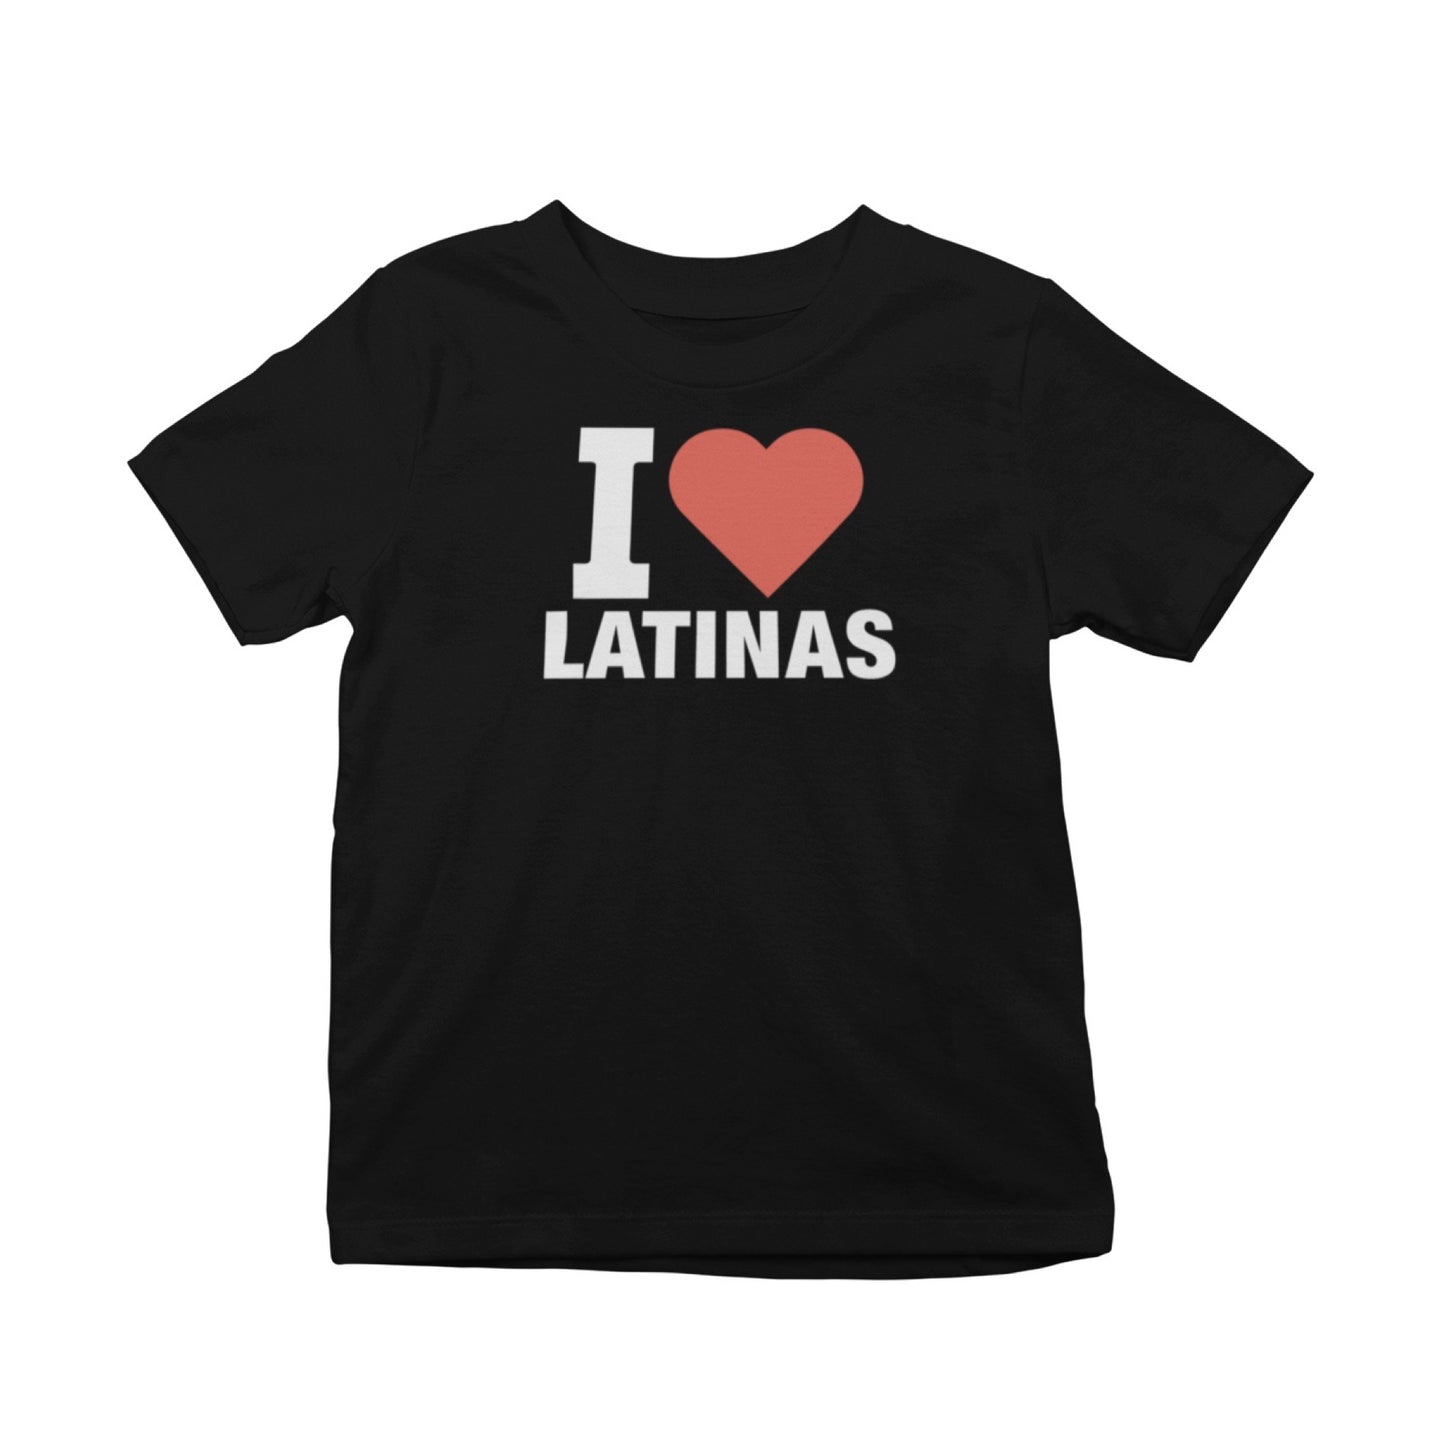 I Heart Latinas T-Shirt